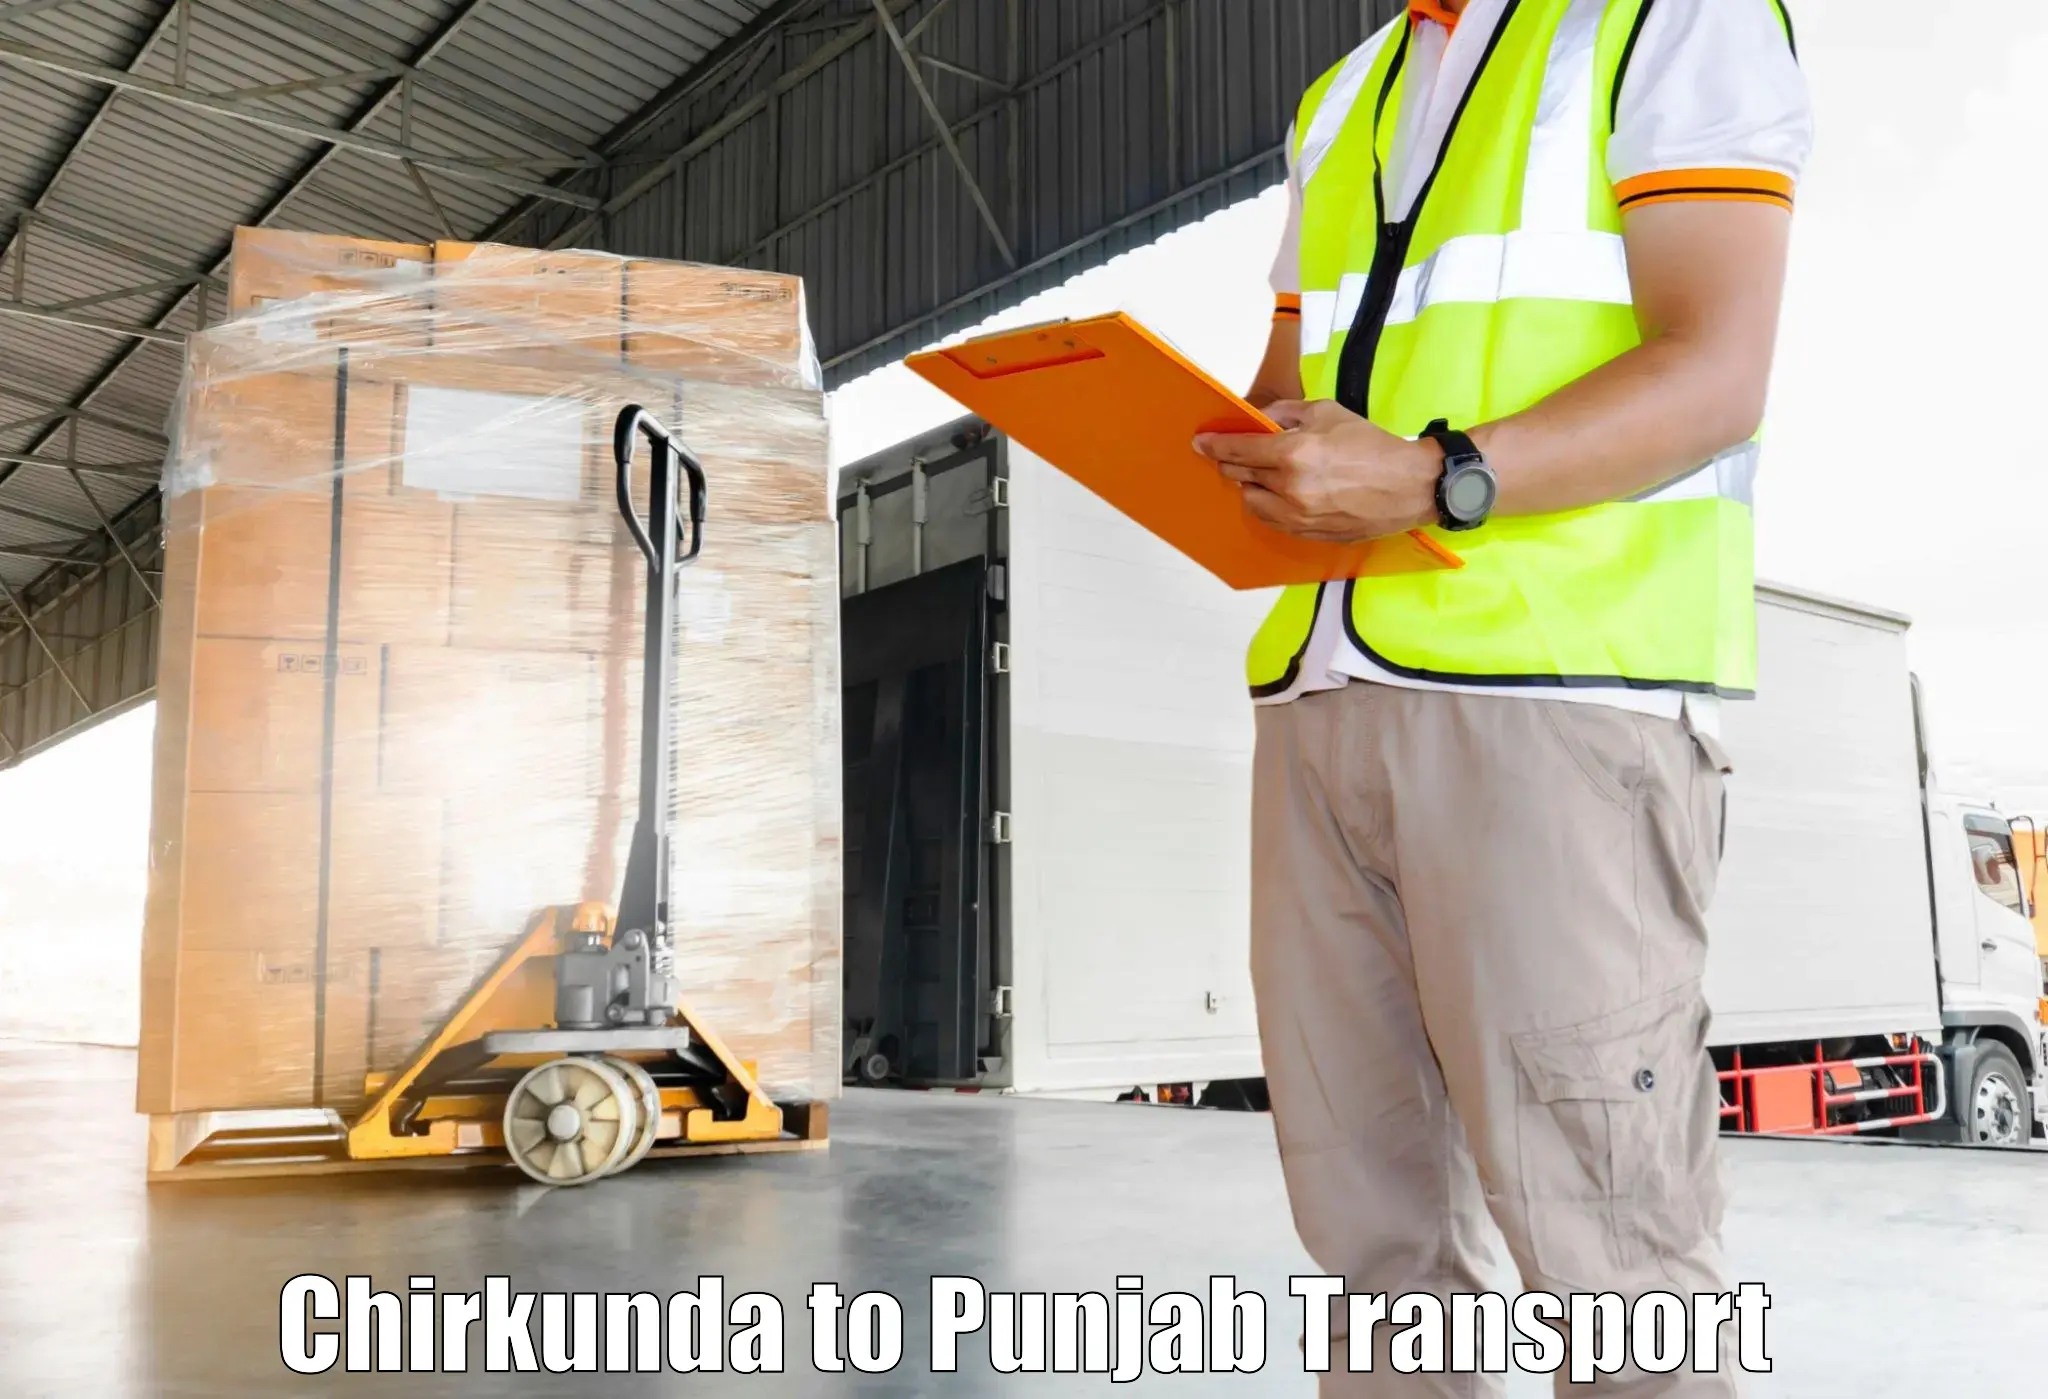 Online transport booking Chirkunda to Dinanagar